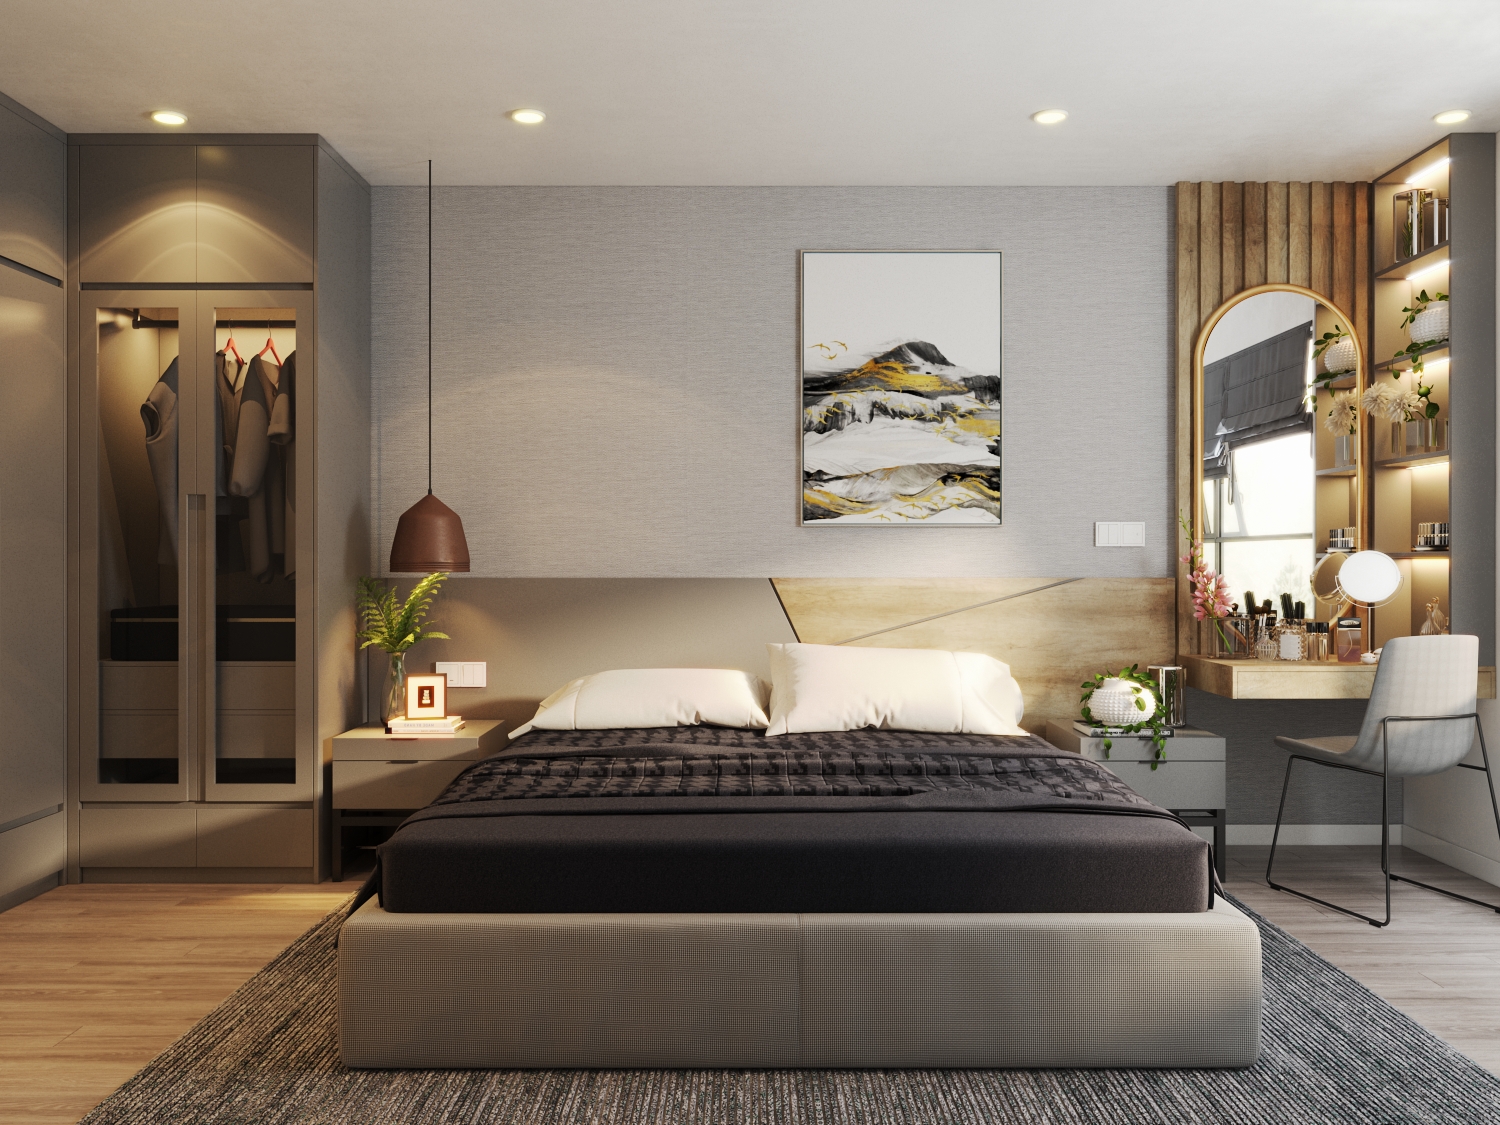 Phòng ngủ với các nội thất đặt sát tường tạo nhiều khoảng trống cho sinh hoạt, đi lại